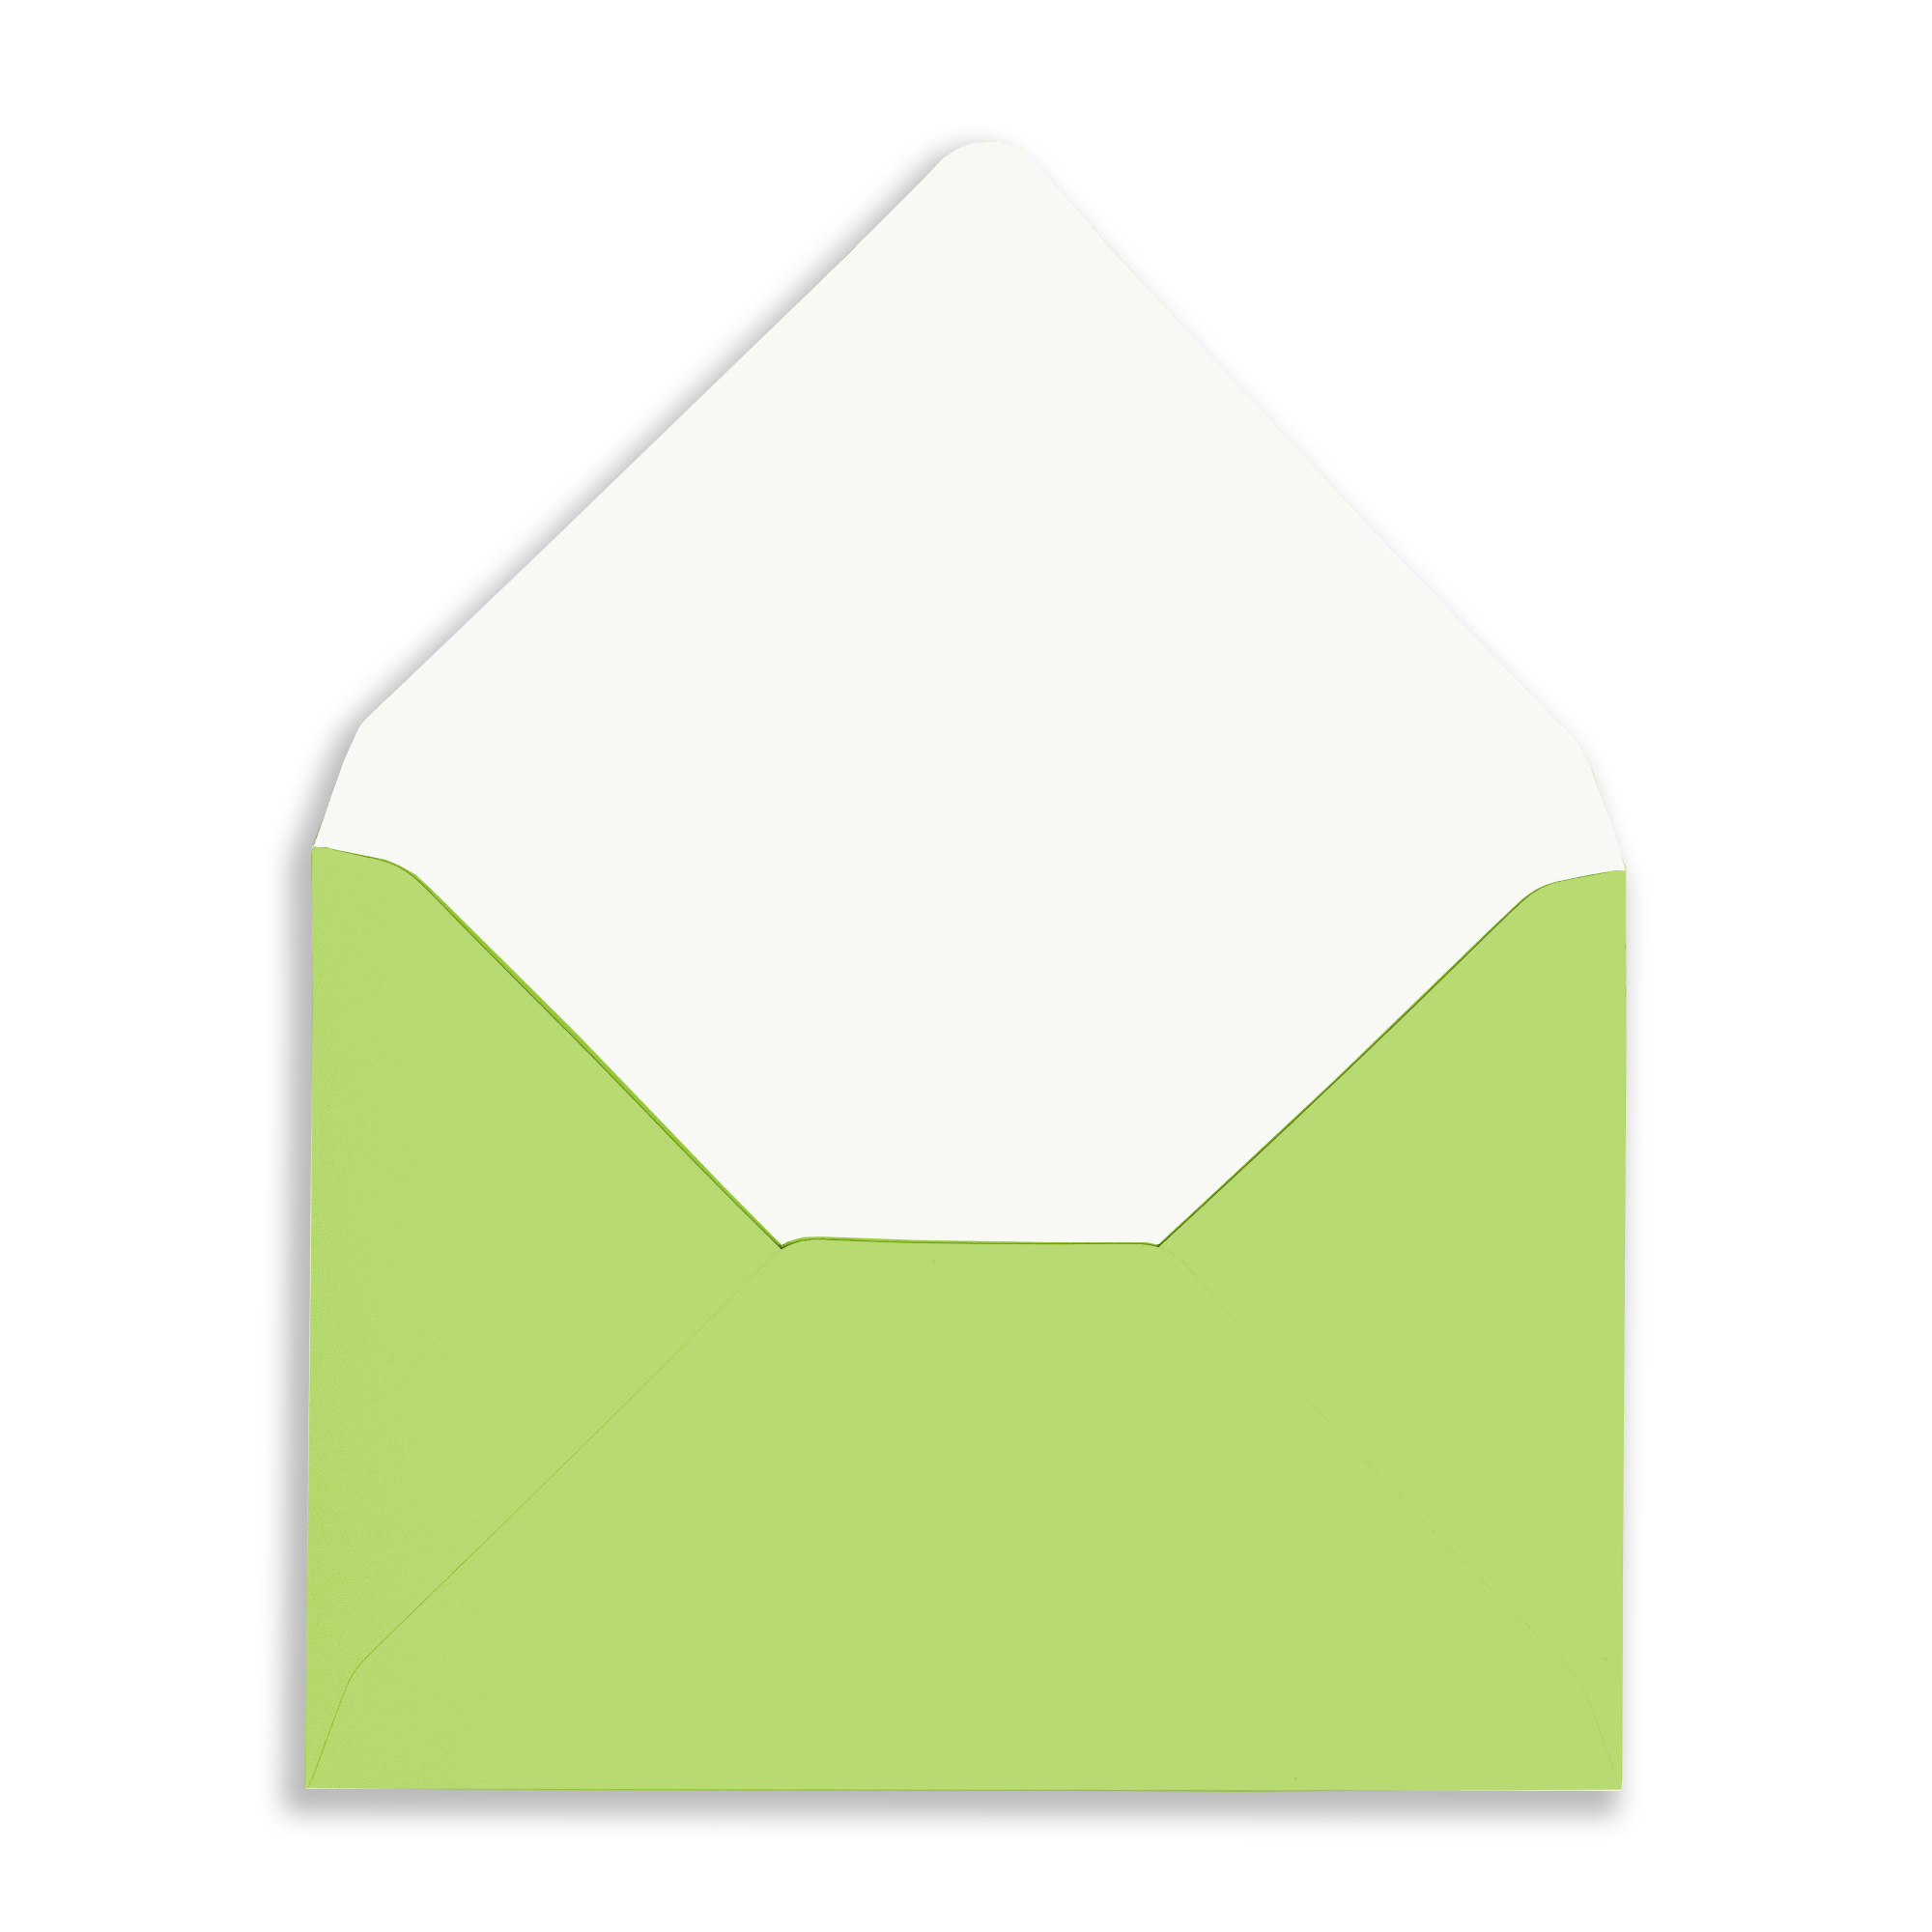 Rec-Chatreuse_Envelope_open-Flap